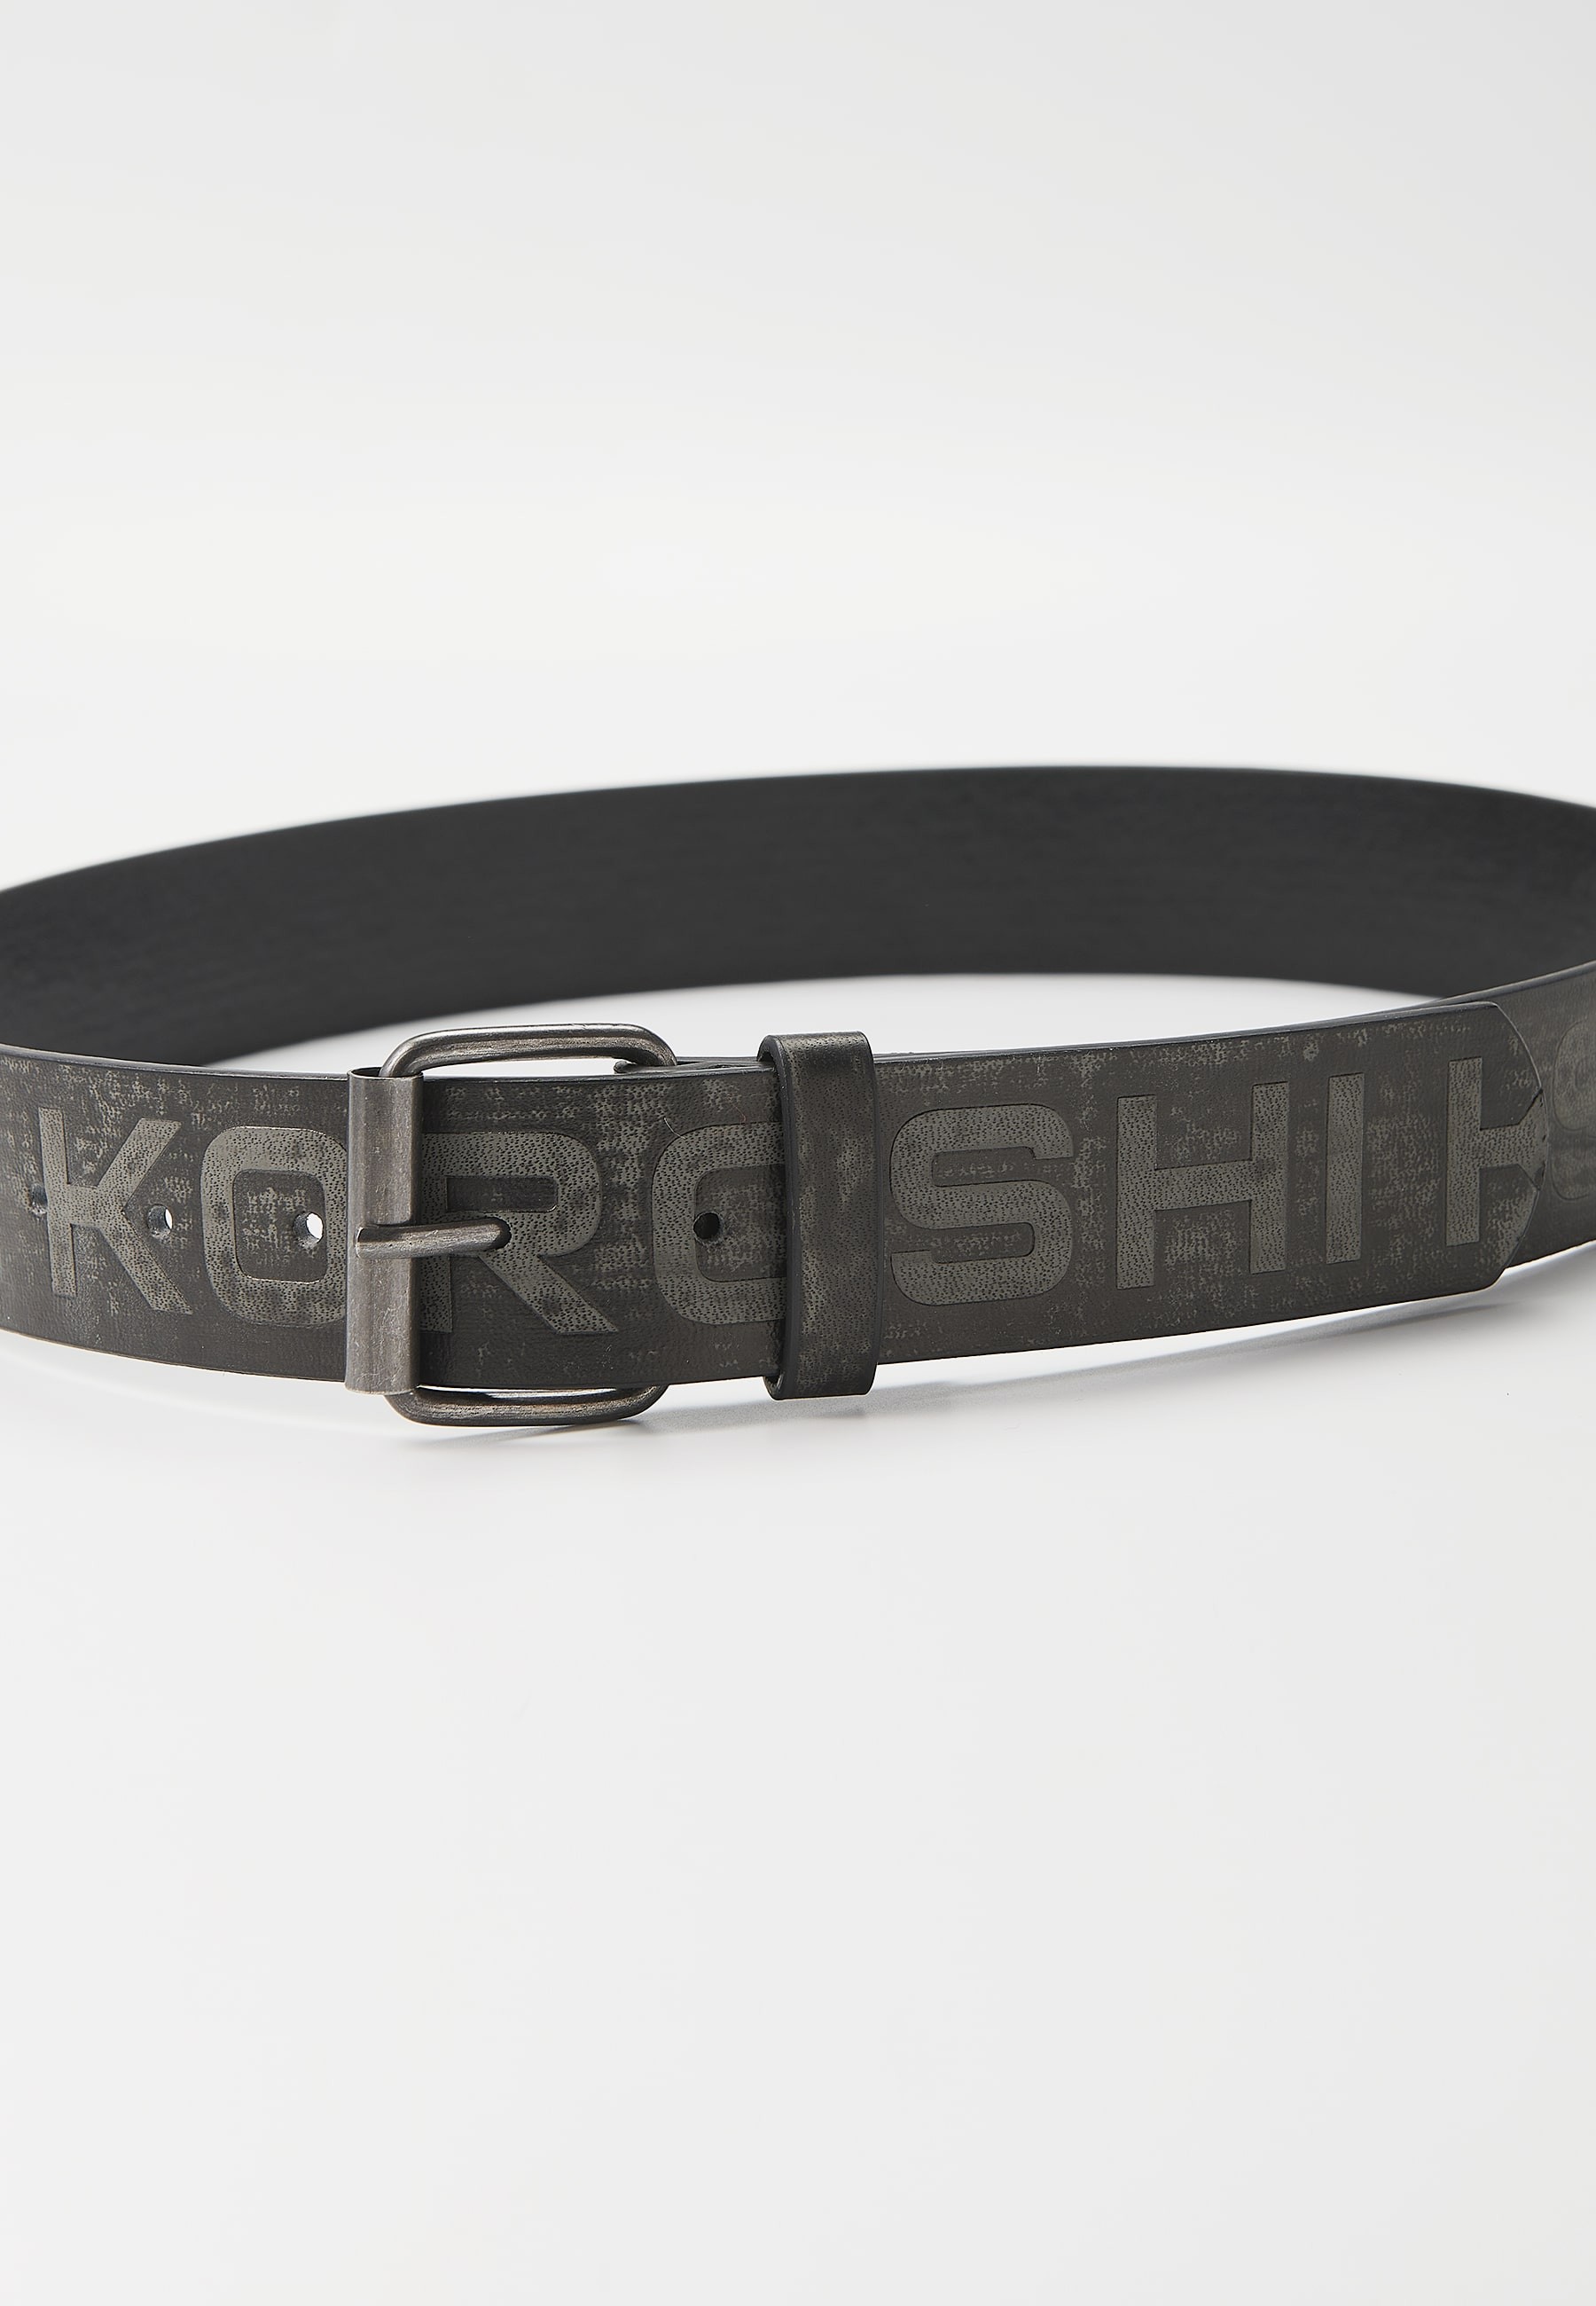 Dreieinhalb Zentimeter breiter Gürtel mit Koröshi-Logo, schwarzer Schnalle und Anstecknadel für Herren 2